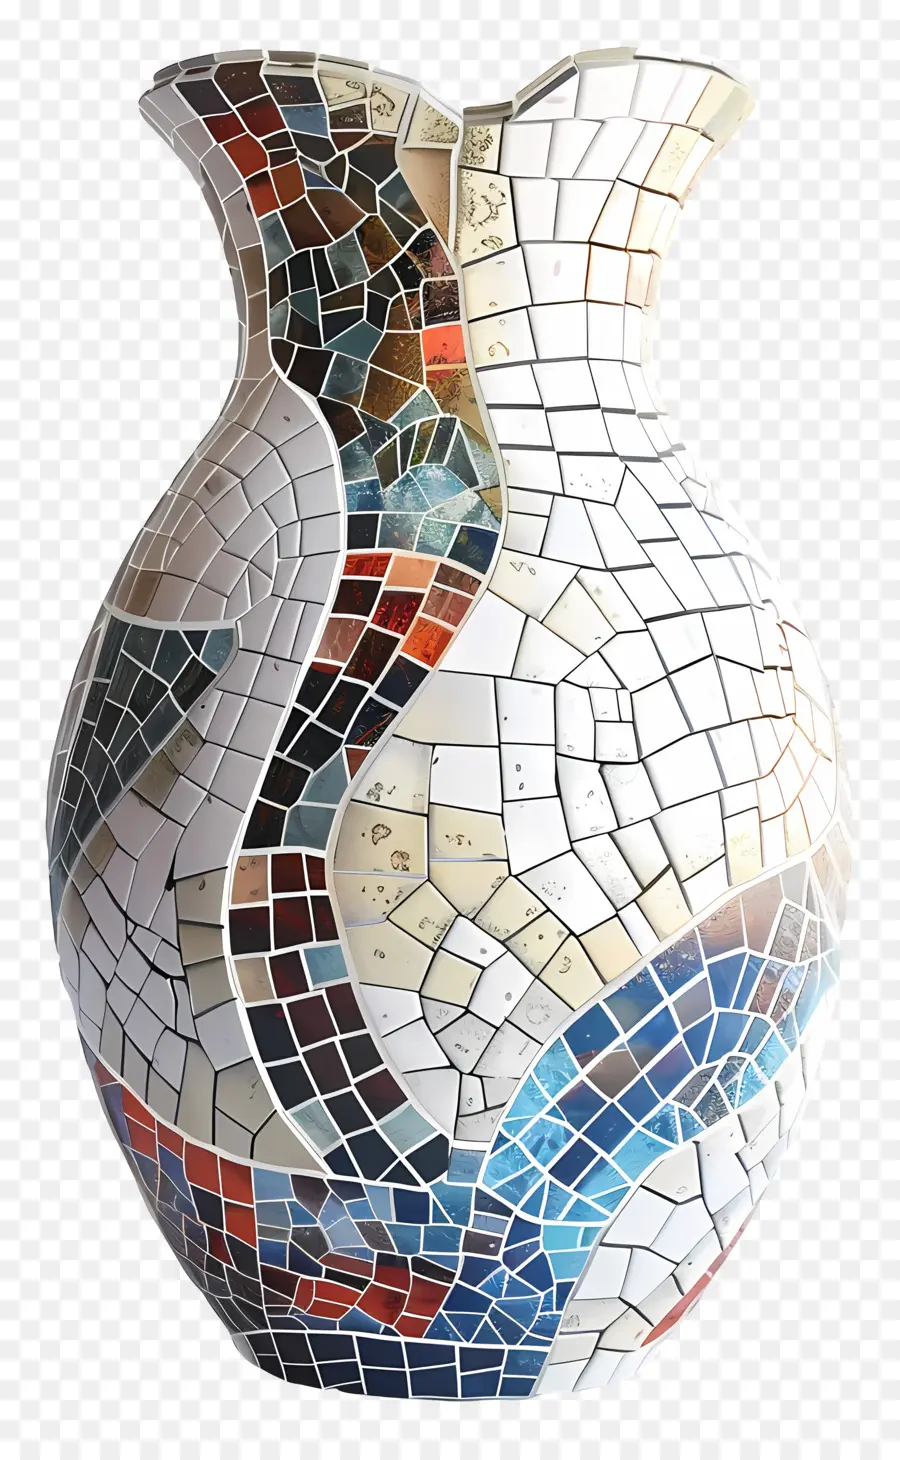 fantasia astratta - Grande vaso a mosaico con motivo a onda colorato e astratto